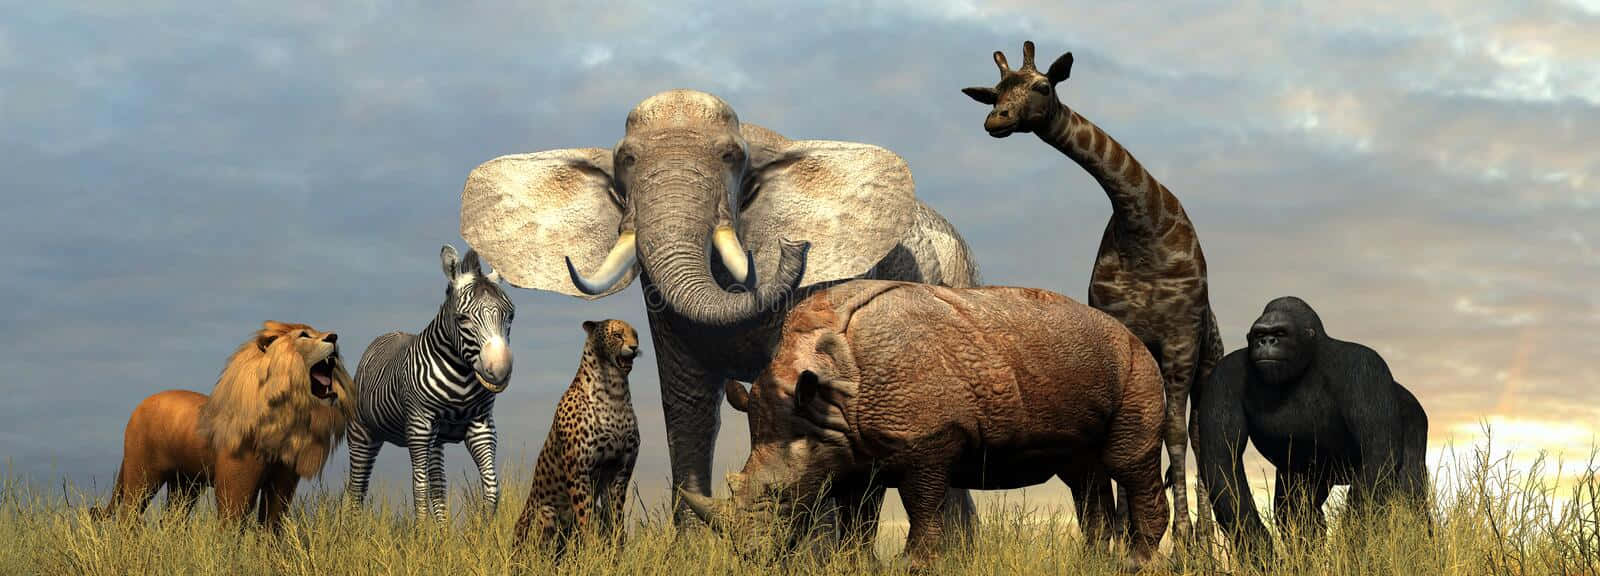 Enelefant Och En Okapi Som Deltar I En Lugn Stund I Den Afrikanska Vildmarken.